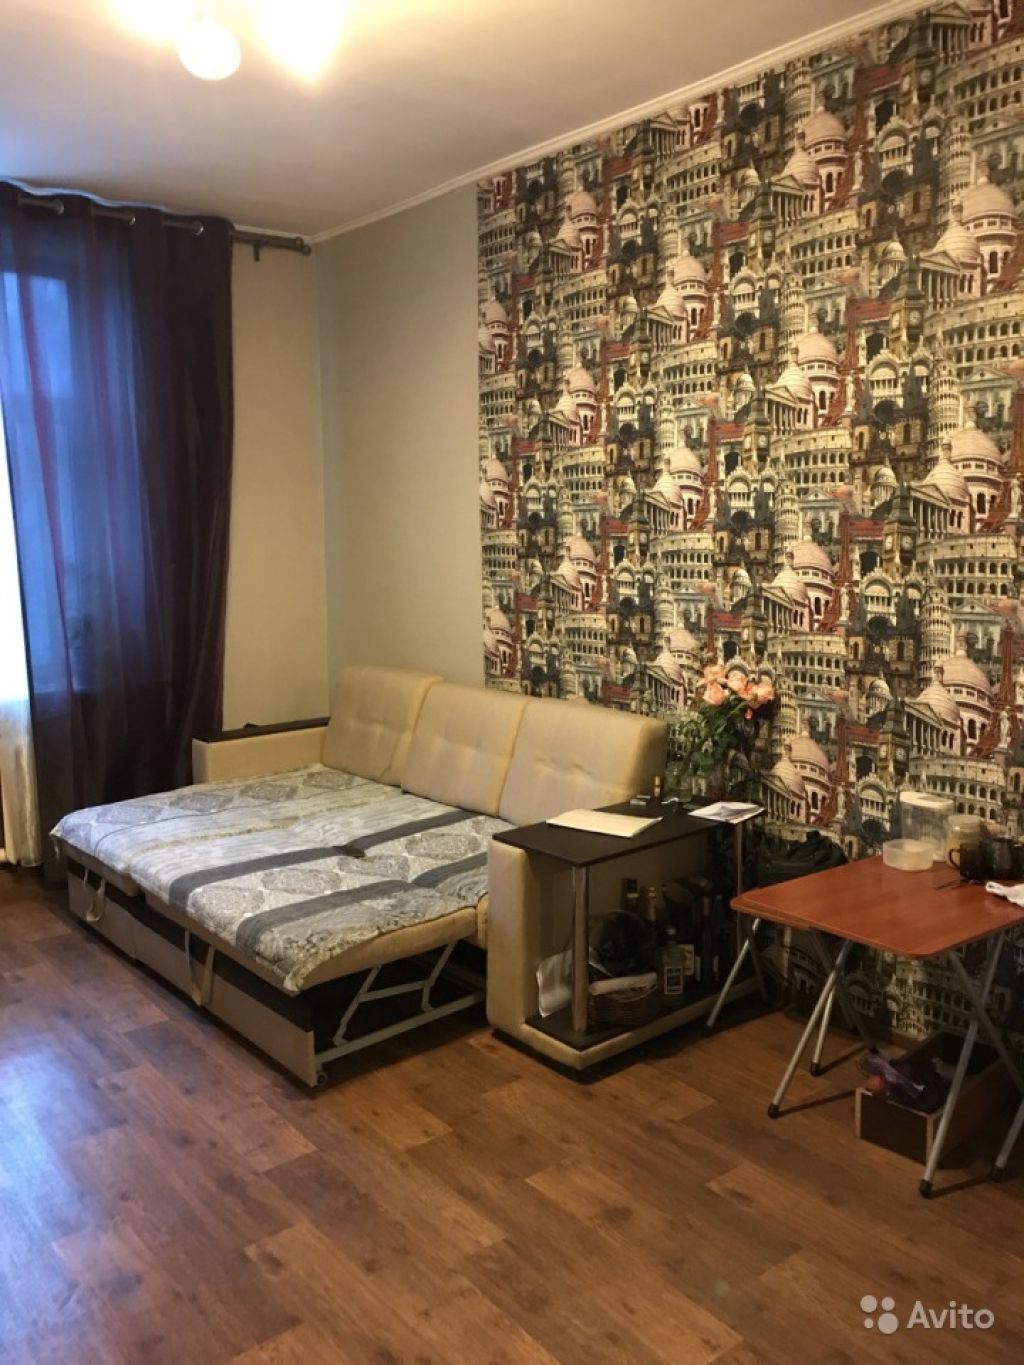 Продам комнату Комната 20.5 м² в 4-к квартире на 4 этаже 5-этажного кирпичного дома в Москве. Фото 1